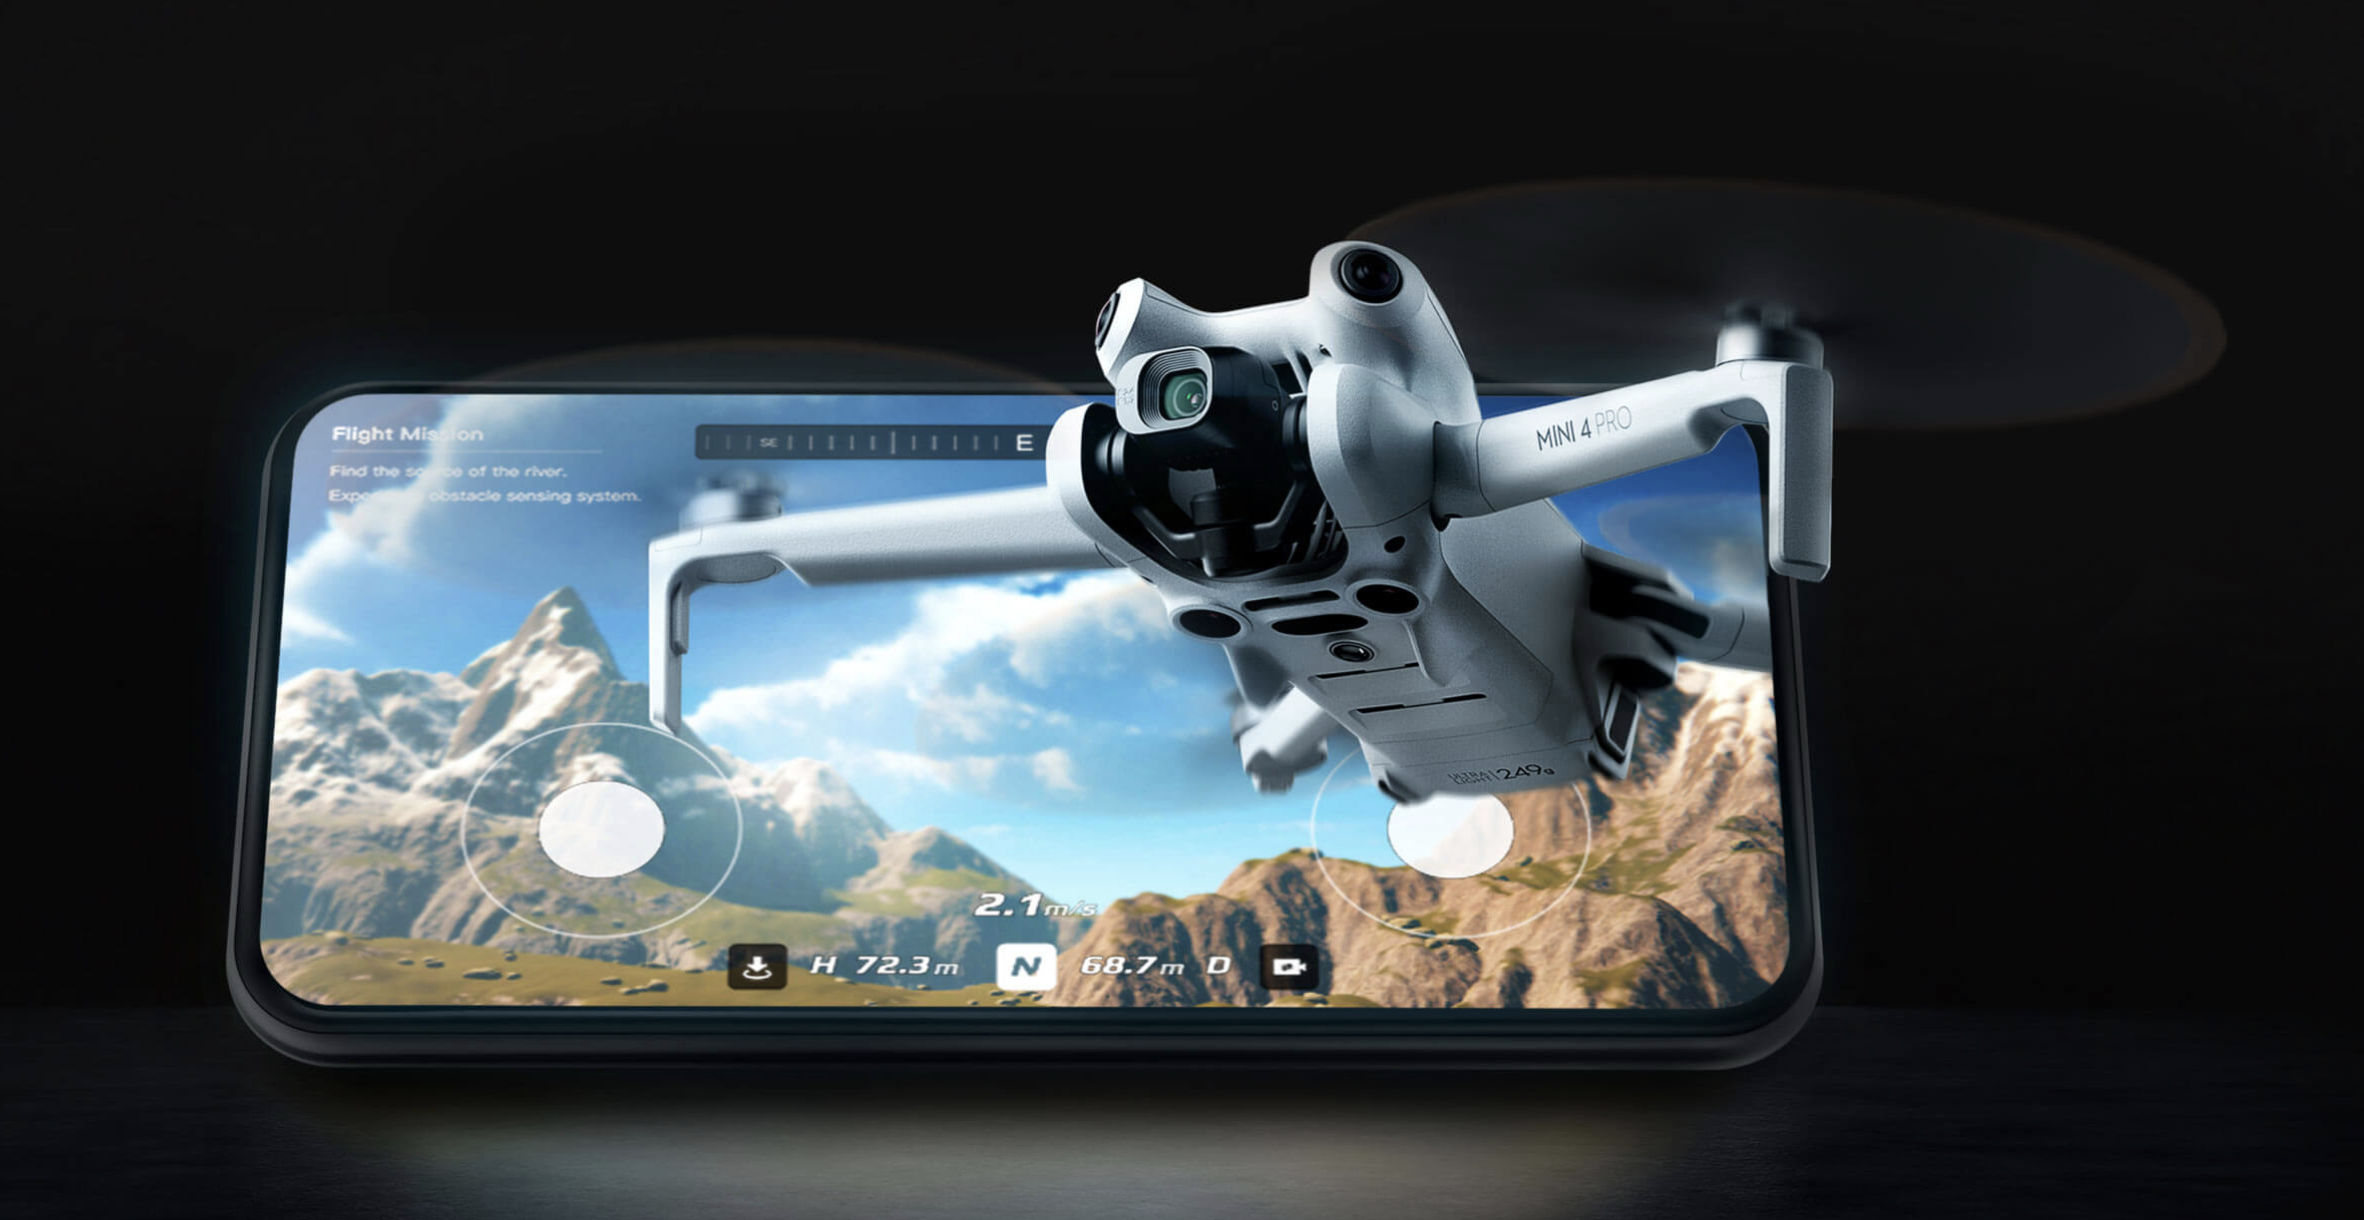 DJI Mini 4 Pro, muhteşem manzaraları keşfetmek için mükemmel bir seçenektir. Bu kompakt drone, yüksek kaliteli fotoğraf ve video çekimleri yapmak için tasarlanmıştır. Şimdi yeni açıları keşfetmek için DJI Mini 4 Pro ile yüksekliği deneyimleyin.